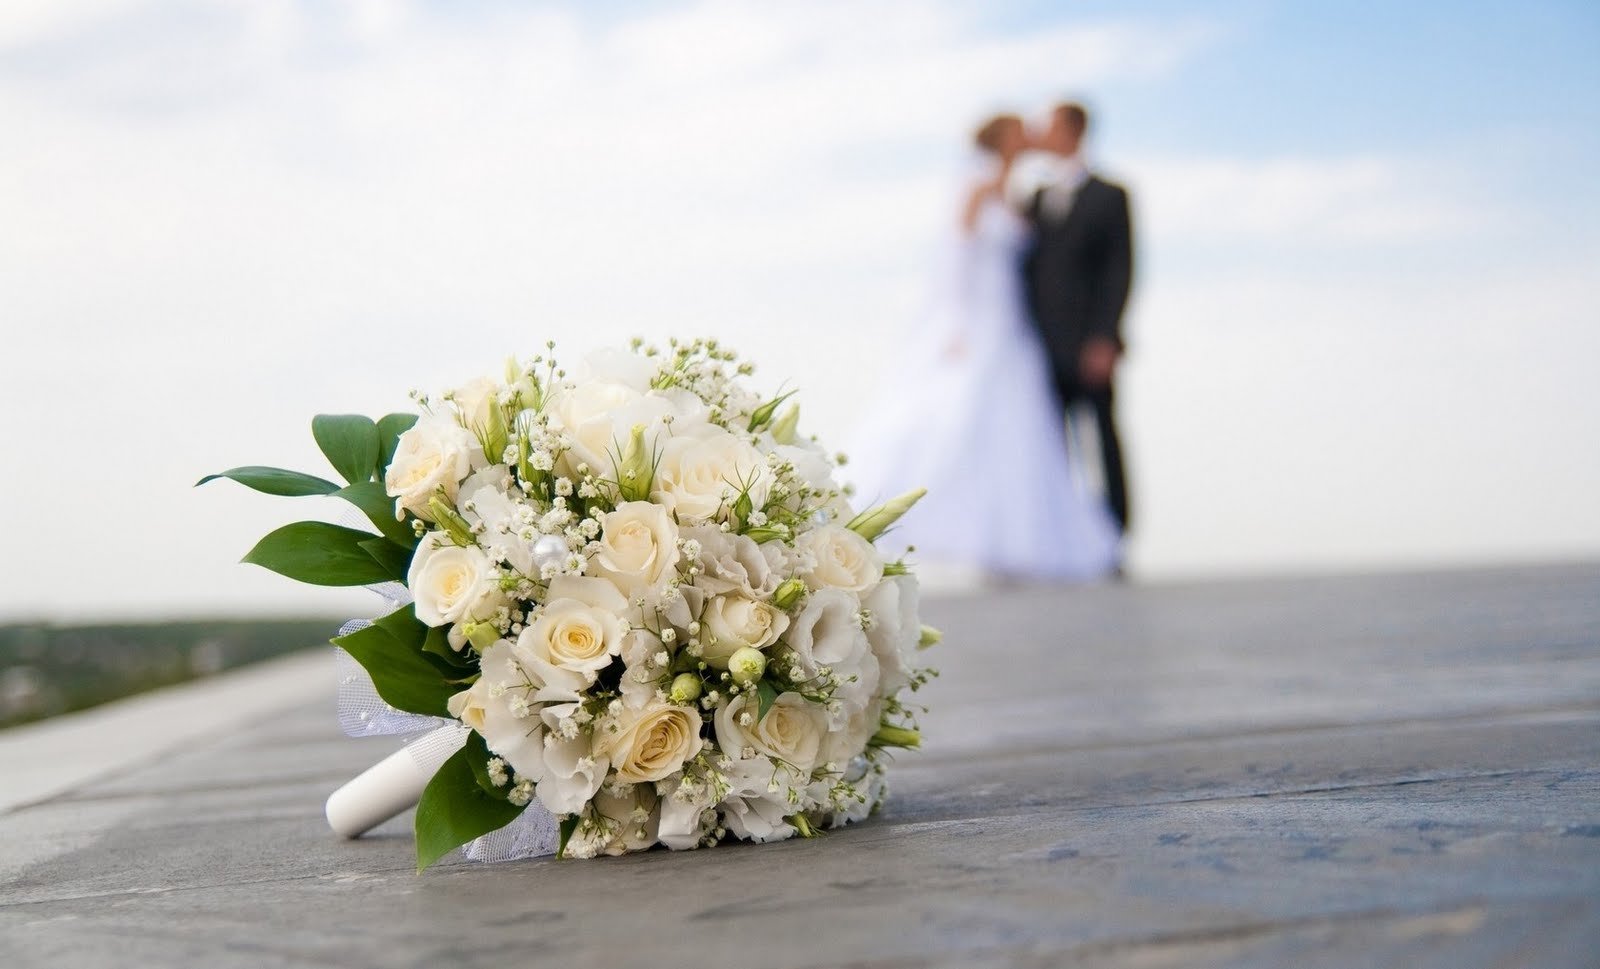 Pentru preturile ieftine si pentru economisirea timpului, viitorii miri isi aleg invitatiile de nunta online